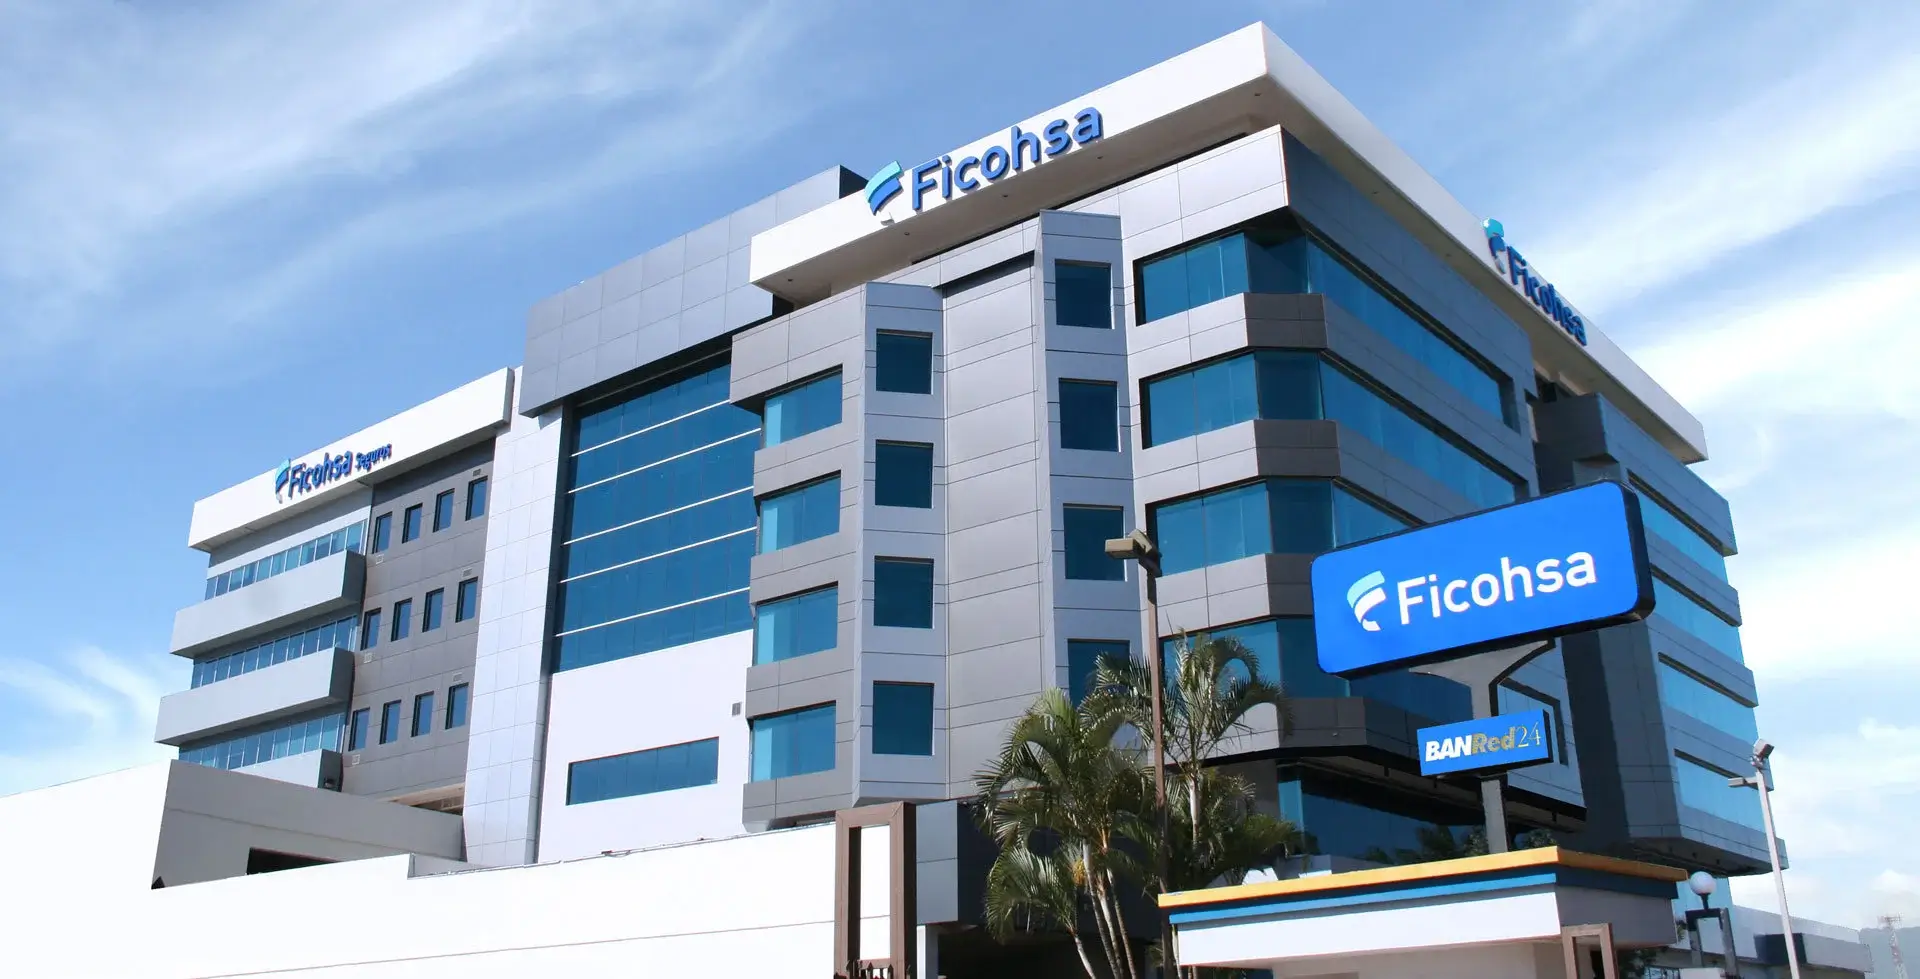 Banco Ficohsa líder en activos brinda confianza y seguridad al ahorrante